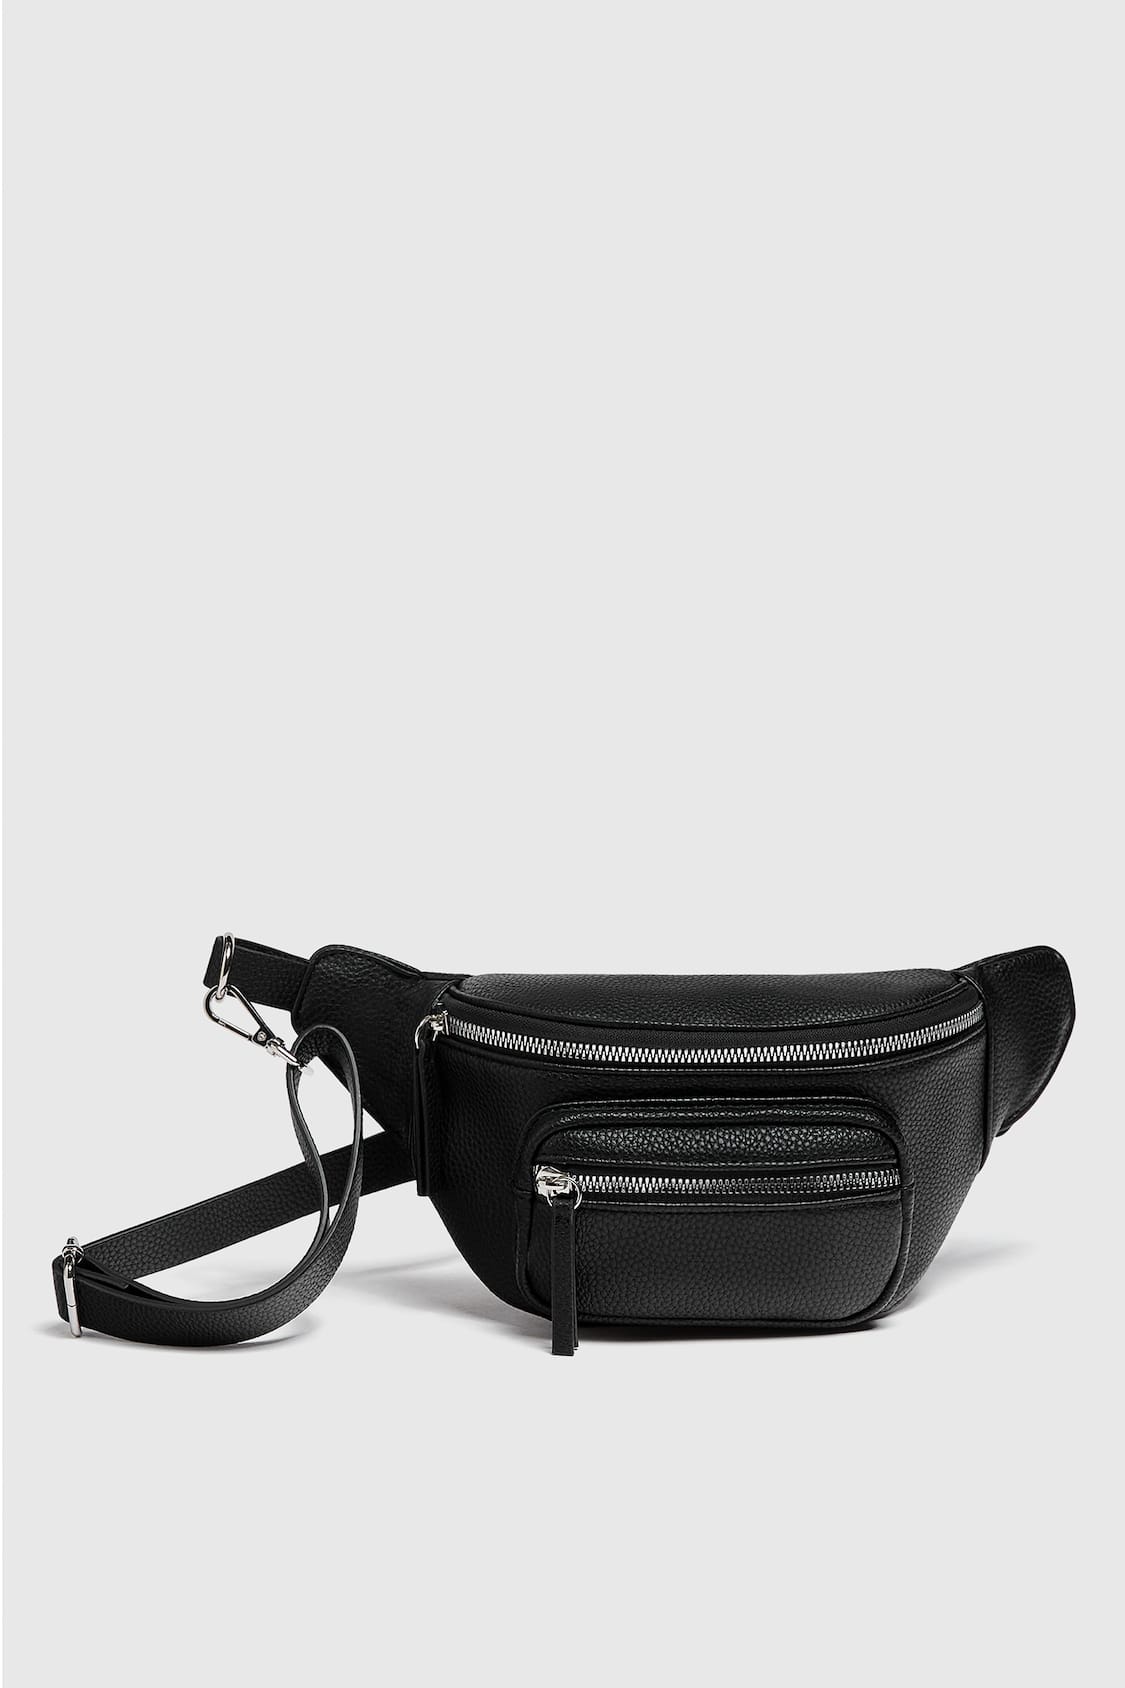 Aldo Monk Strapadjustable Nylon Shoulder Strap For Men's Laptop Bag -  Black Crossbody Belt